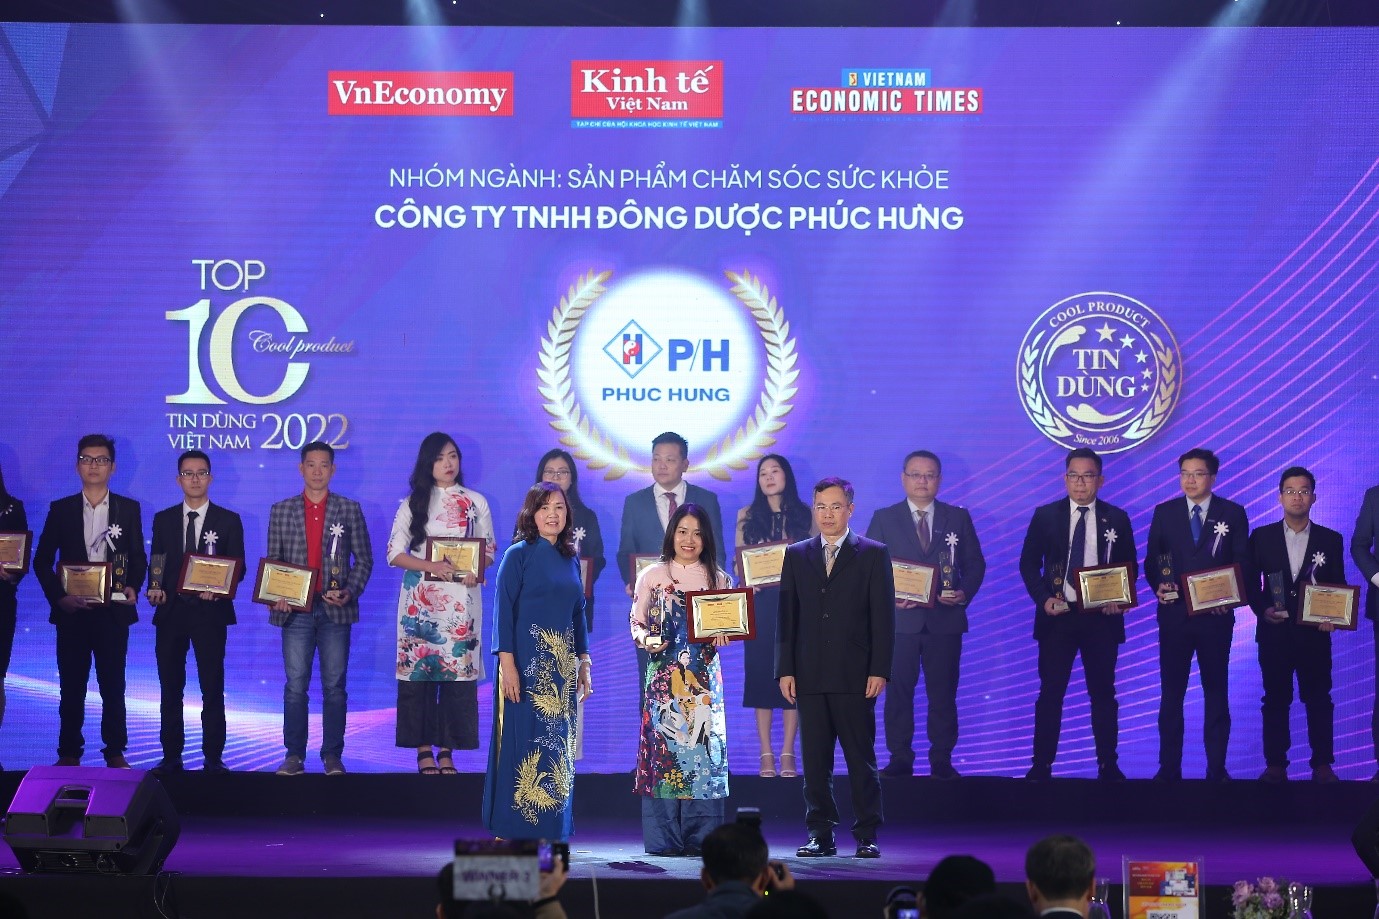 Đại diện nhãn hàng Long huyết P/H nhận giải thưởng Tin dùng 2022